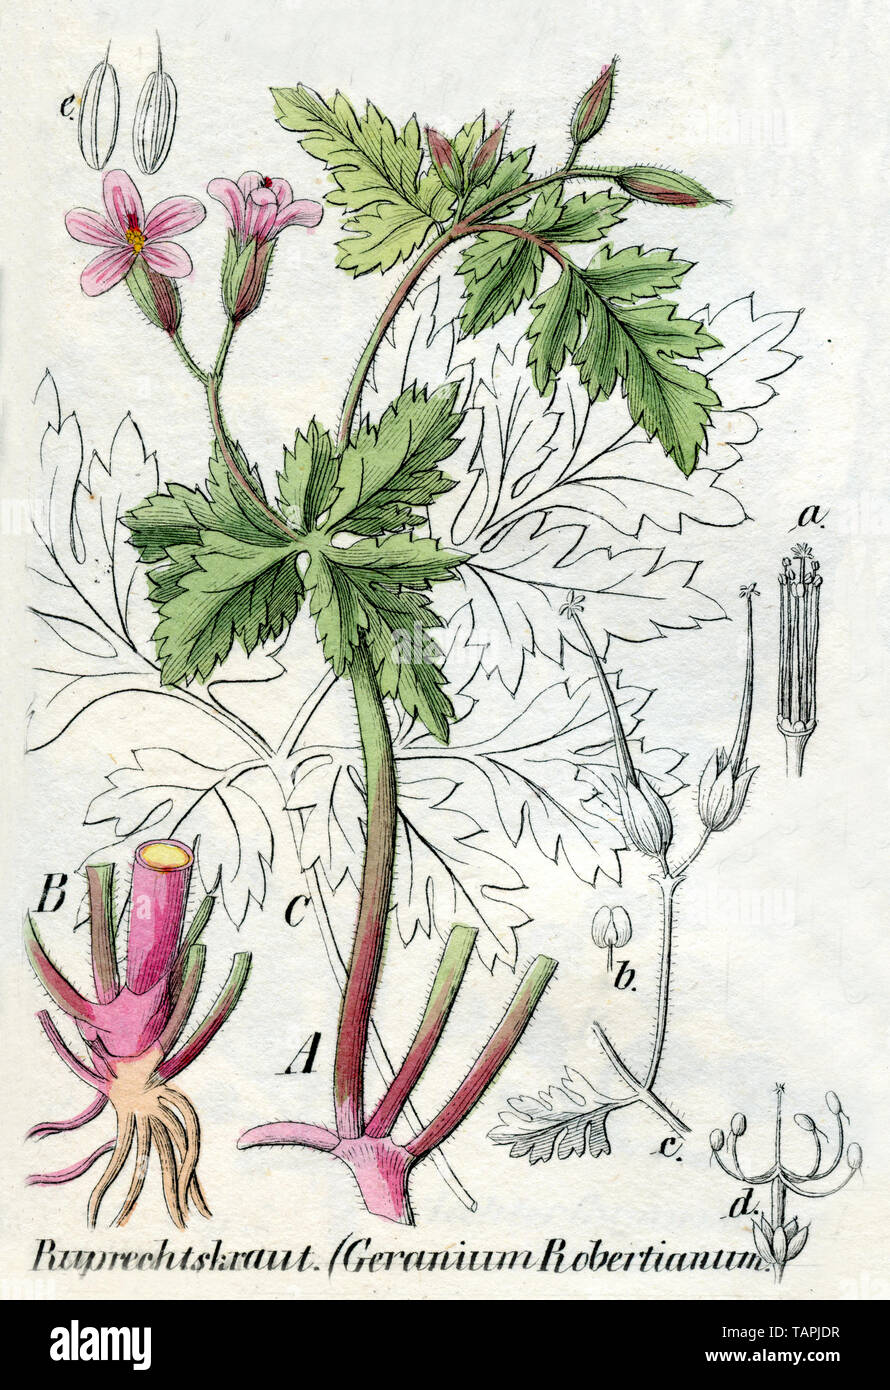 herb-Robert or Roberts geranium Geranium Robertianum,  (botany book, 1850) Stock Photo